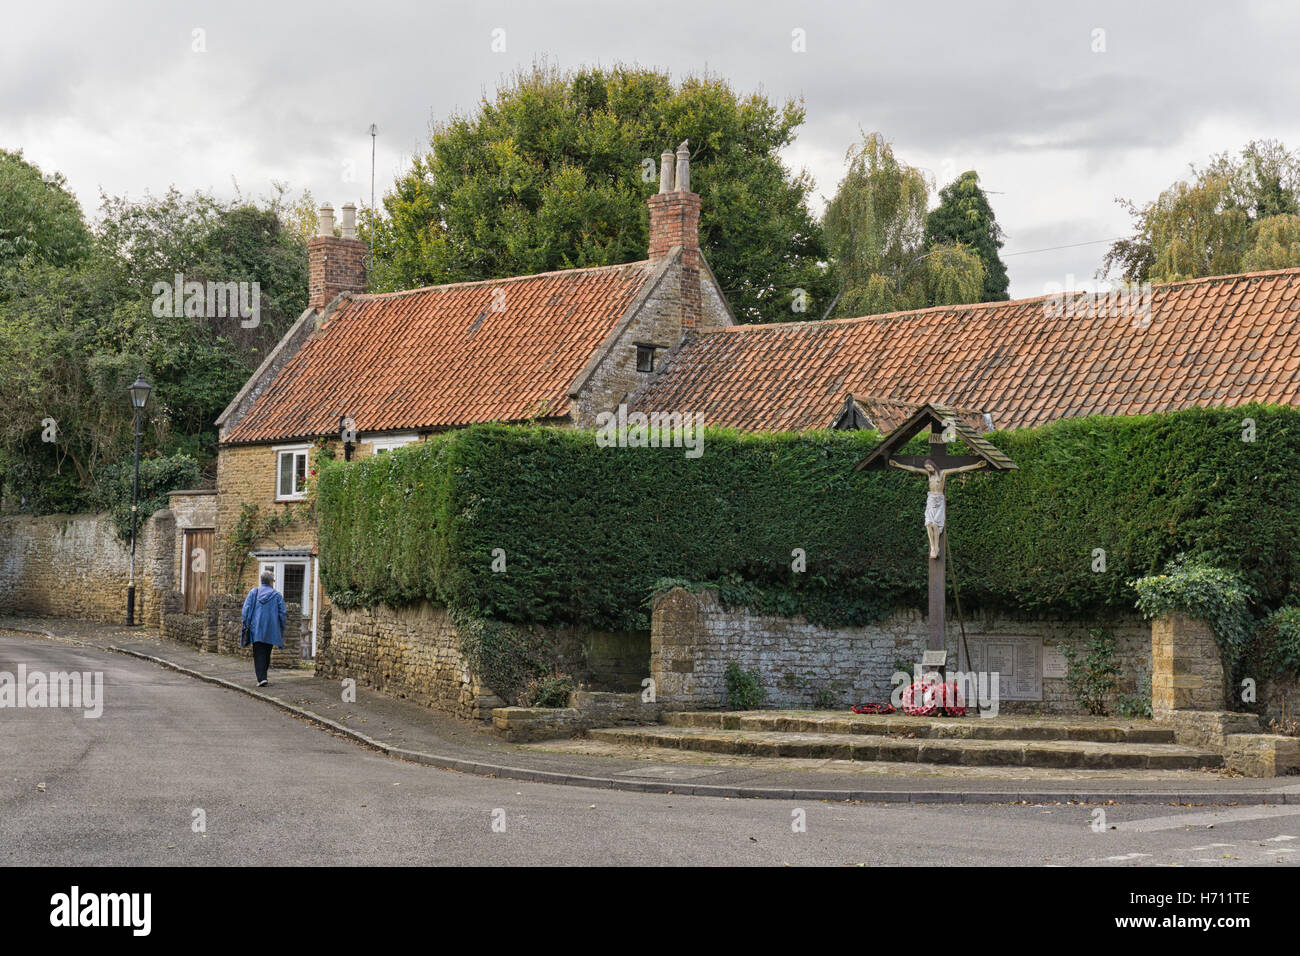 Memoriale di guerra e cottage nel villaggio di grande fatturazione, nella periferia di Northampton, Regno Unito Foto Stock